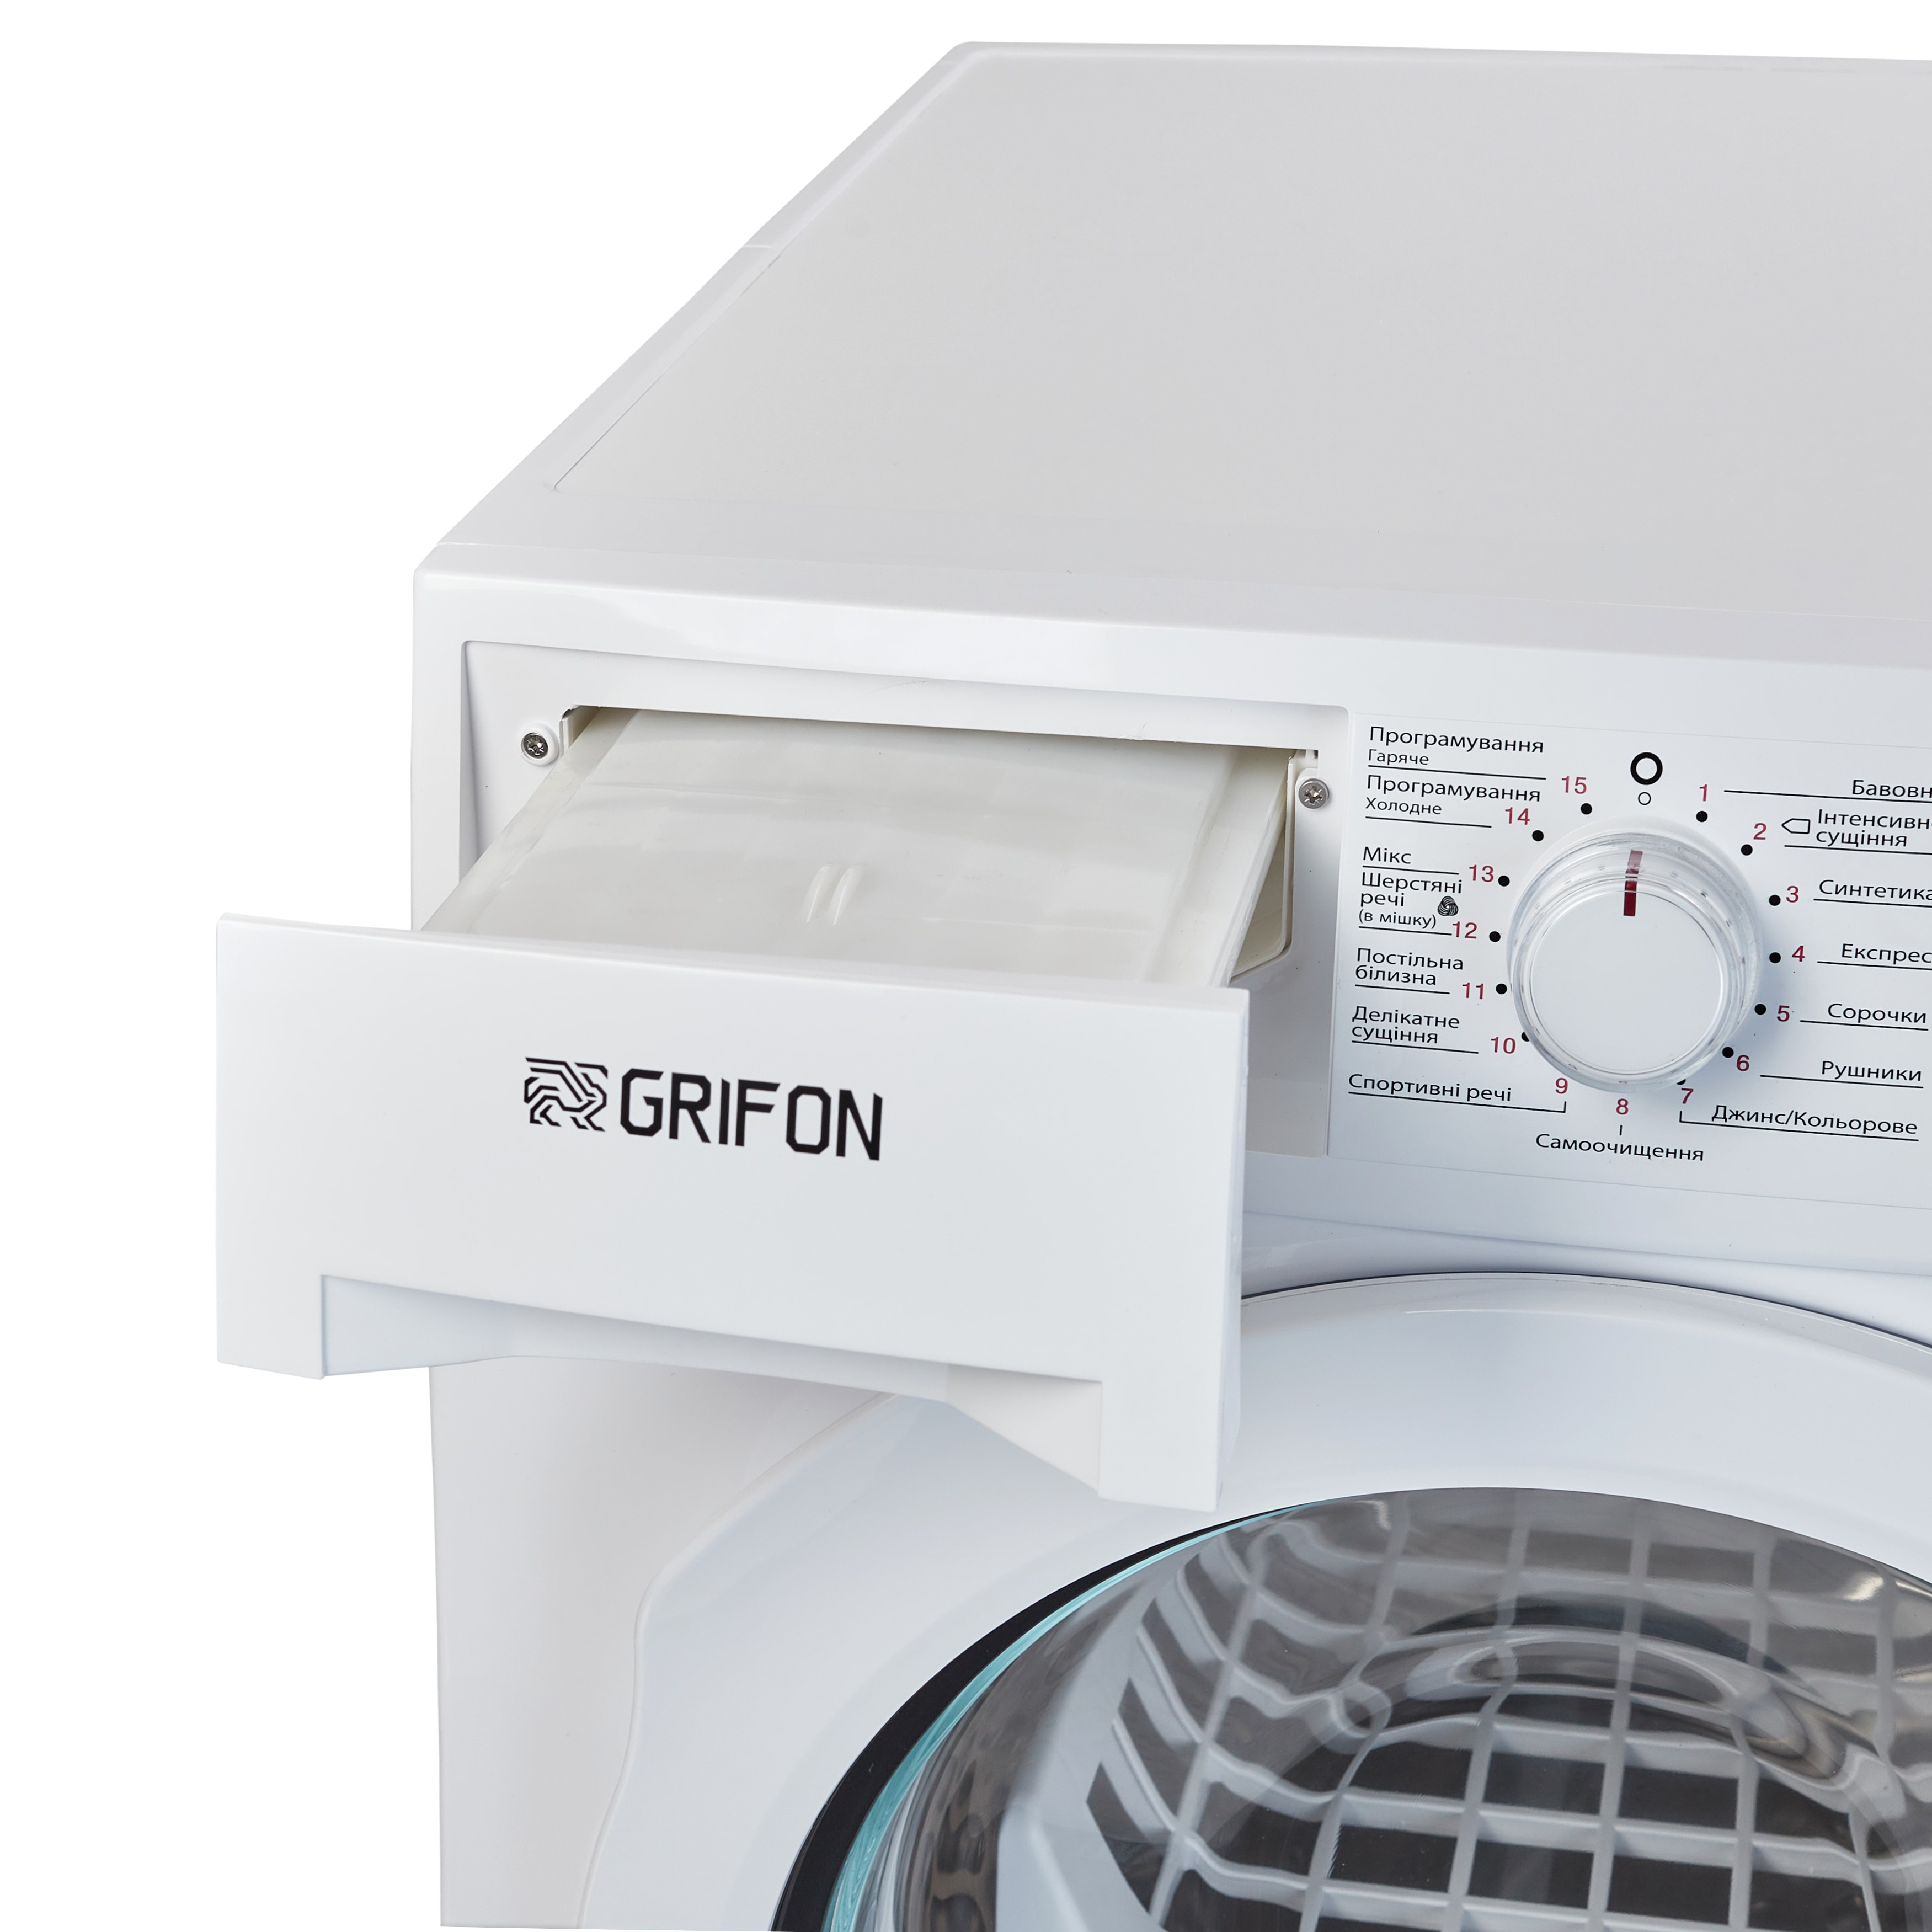 Сушильная машина Grifon GHPD-9 характеристики - фотография 7